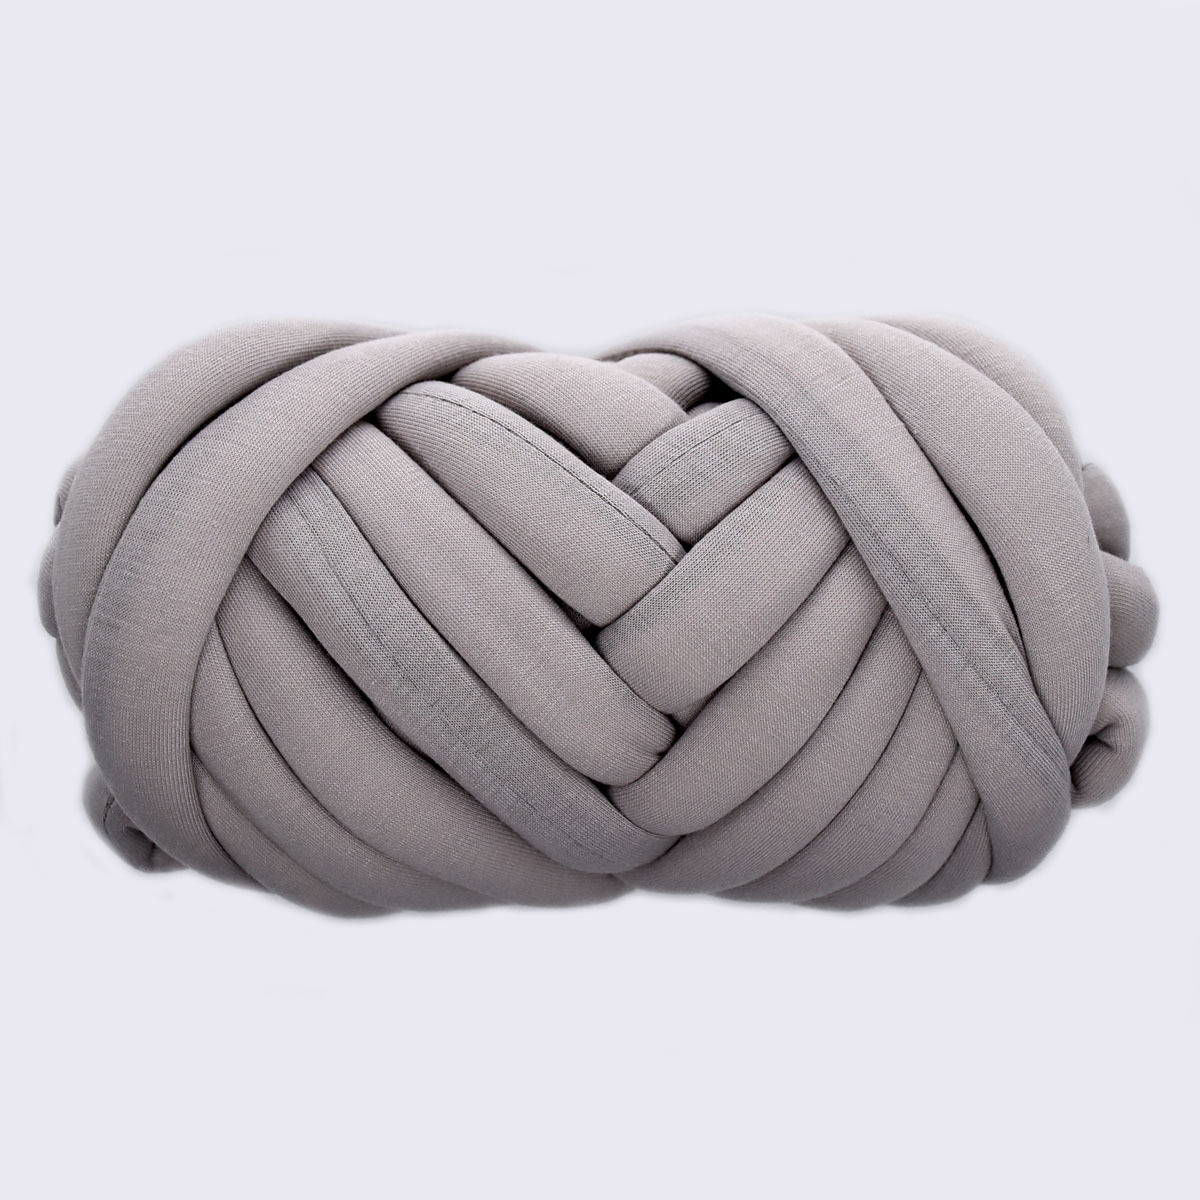 Super Soft Velvet Bulky Tube Yarn for Hand Knitting Blanket for Braided  Knot, Giant Arm Knitting Yarn for Knitting Throw Rugs Pillow(Gray 0.55lb)